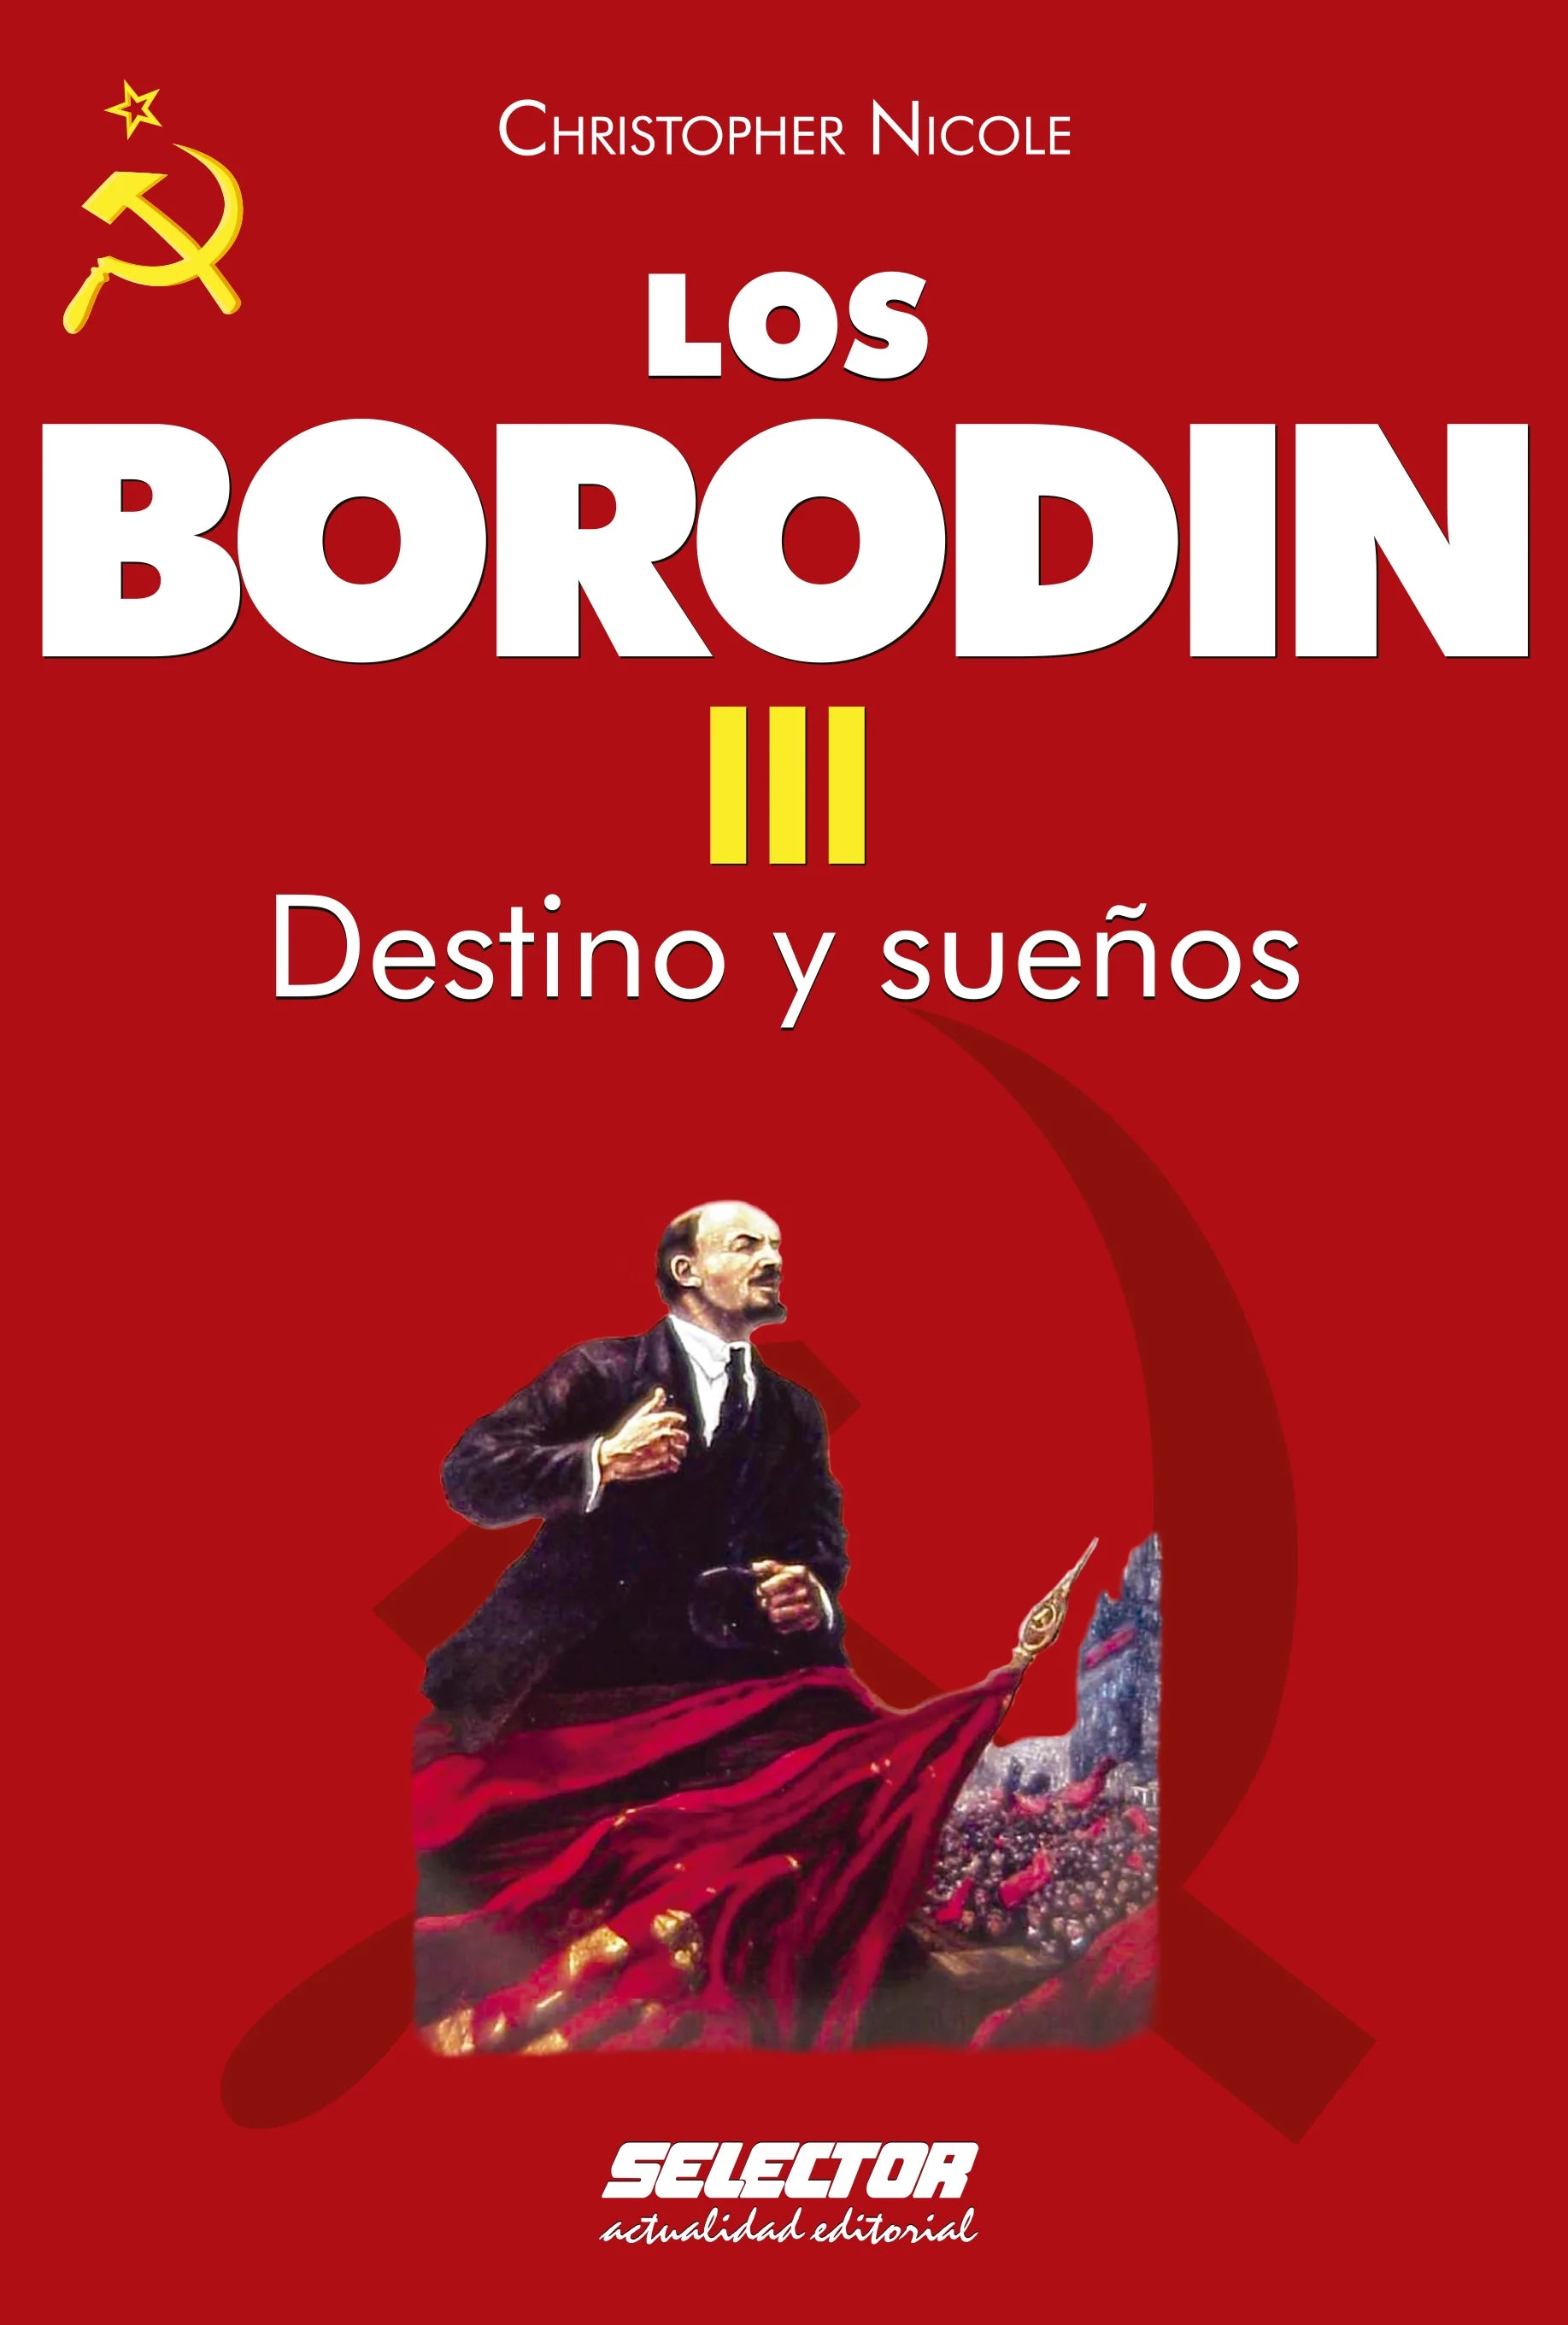 Borodin III. Destino y sueños - Editorial Selector